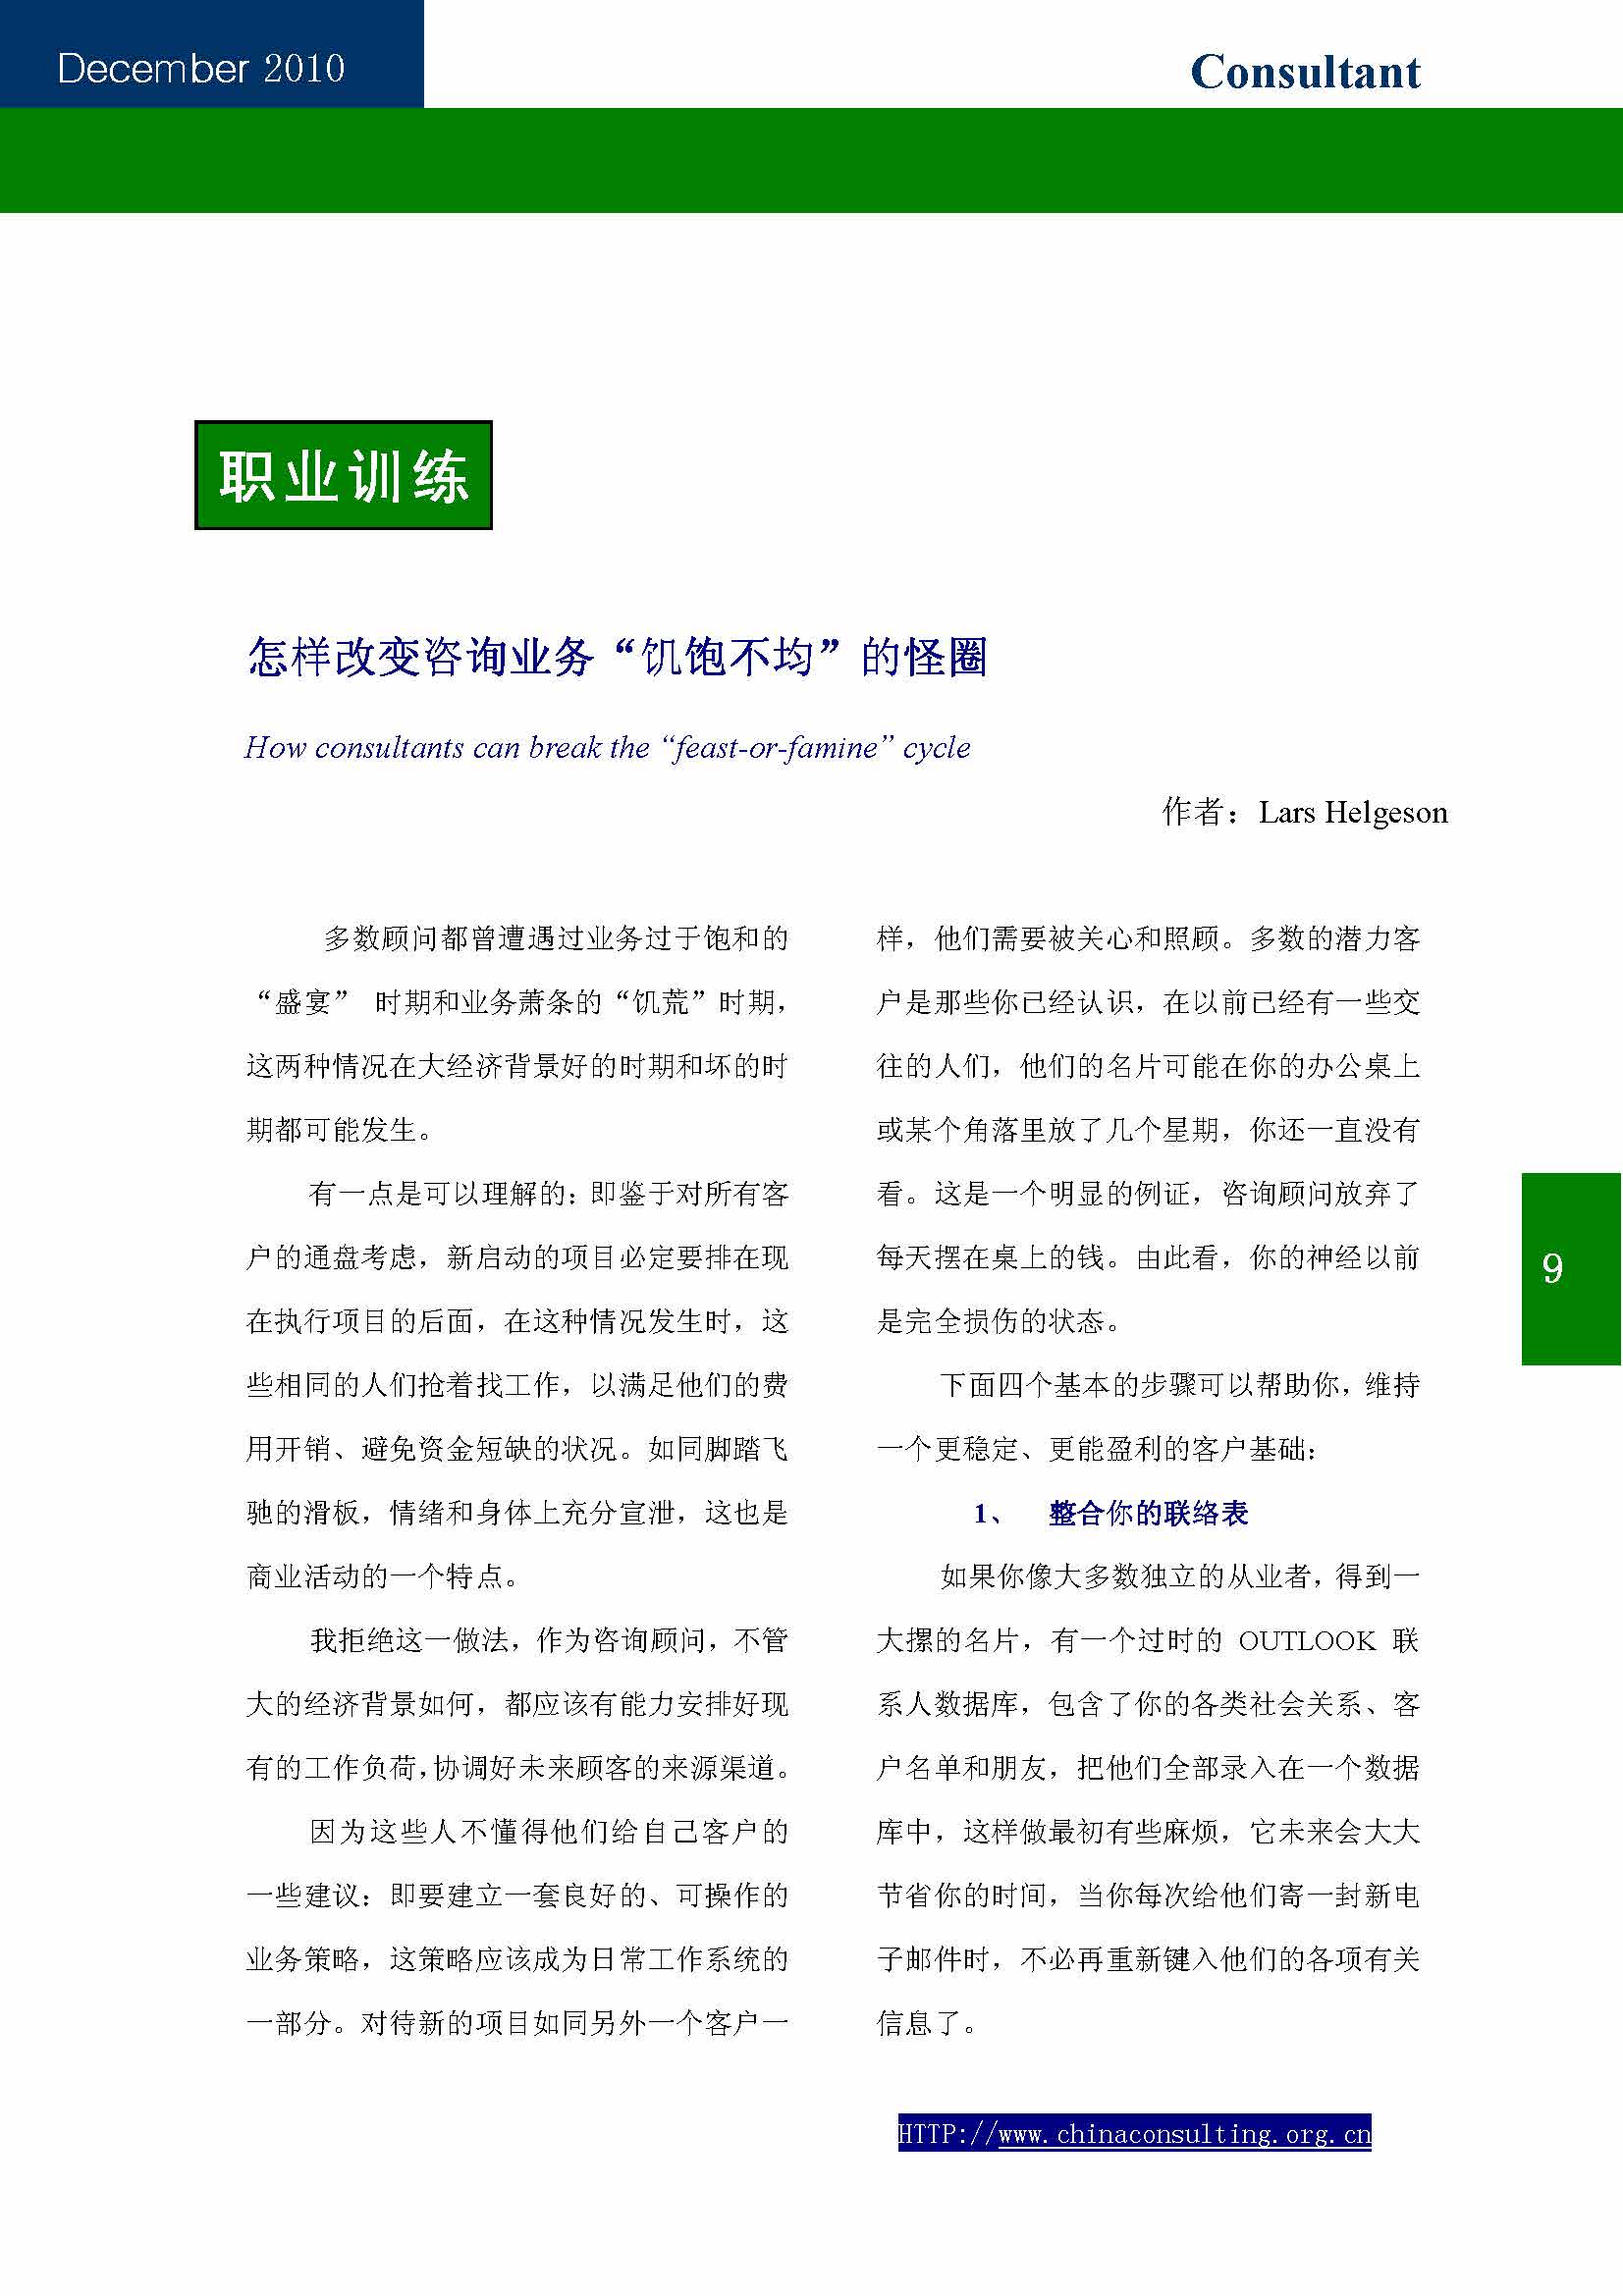 13中国科技咨询协会第十三期会刊_页面_11.jpg